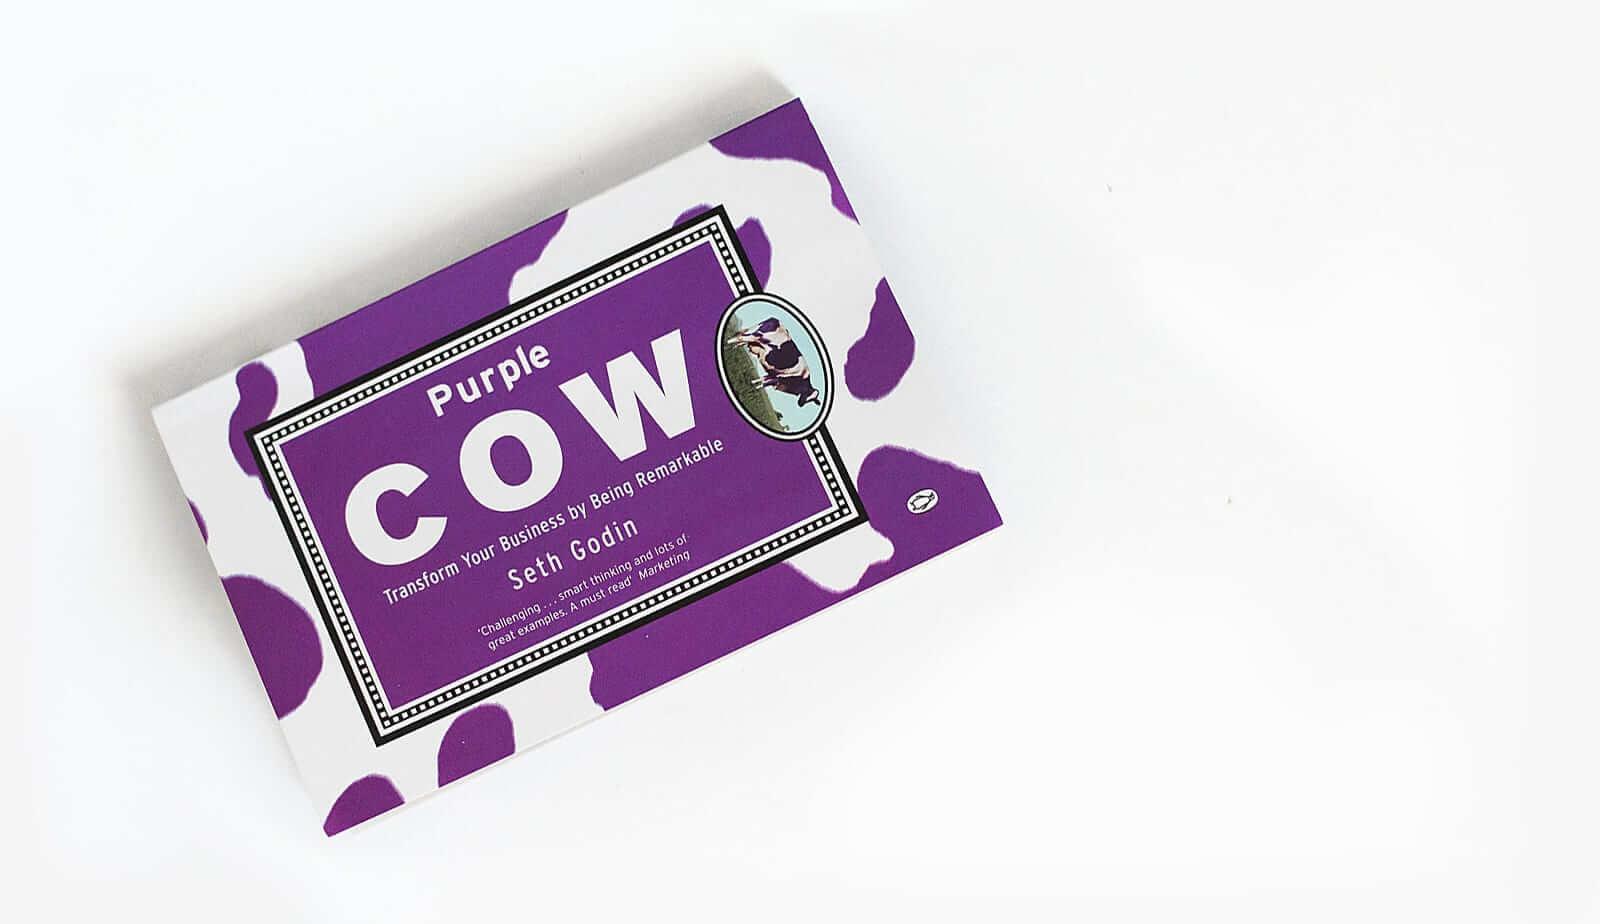 book cover of Seth Godin's book "Purple Cow"